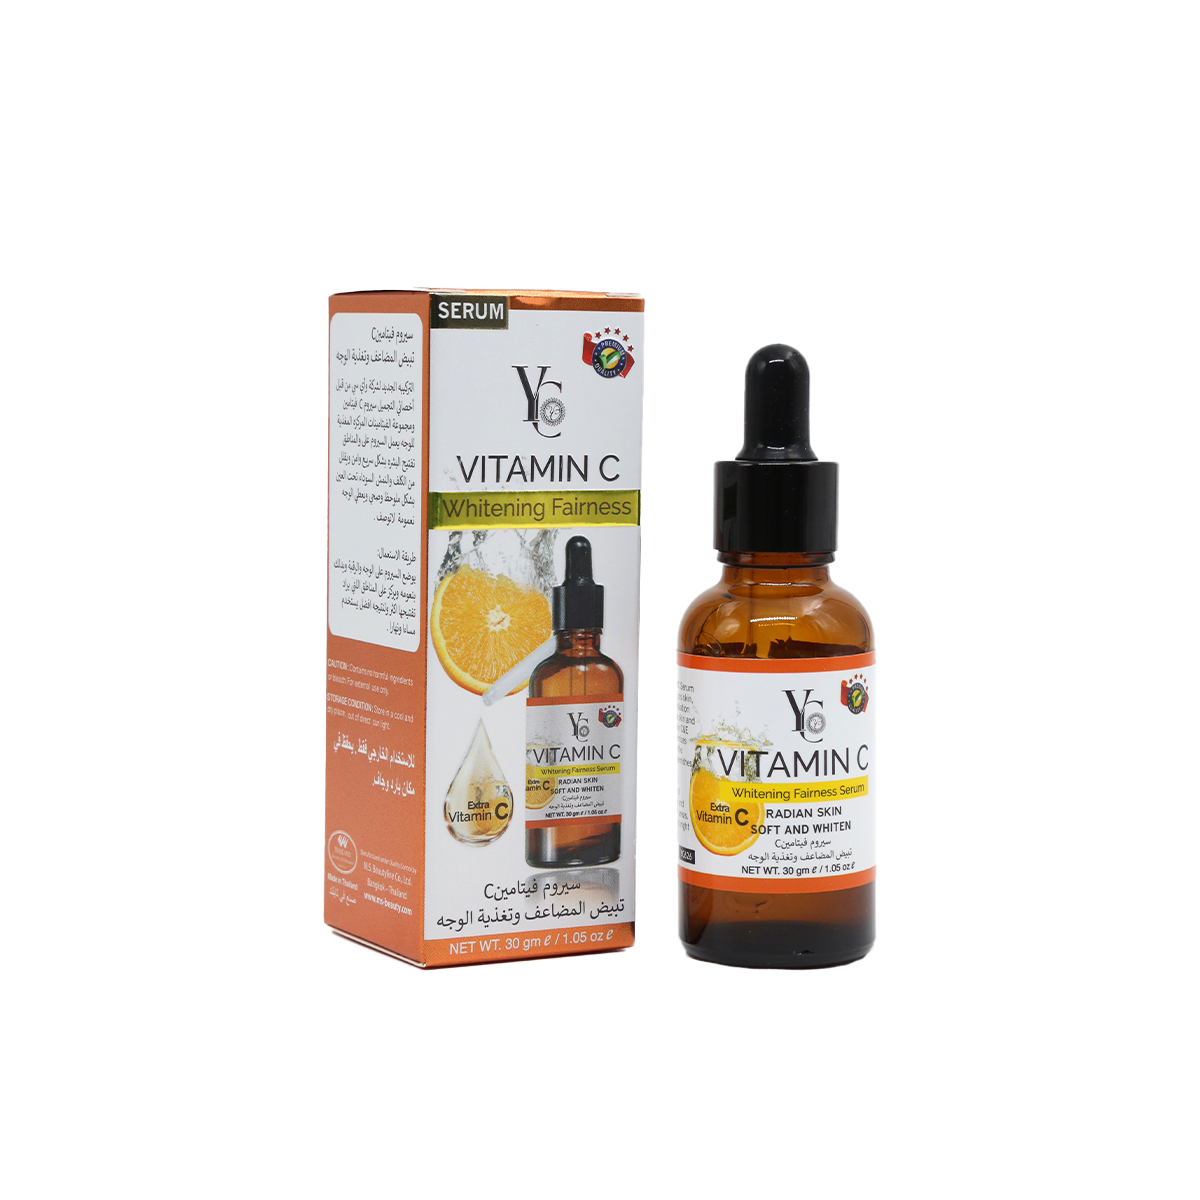 66-8859362505584-YC-626-Yong Chin Whitening Fairness Vitamin C Serum 30ml